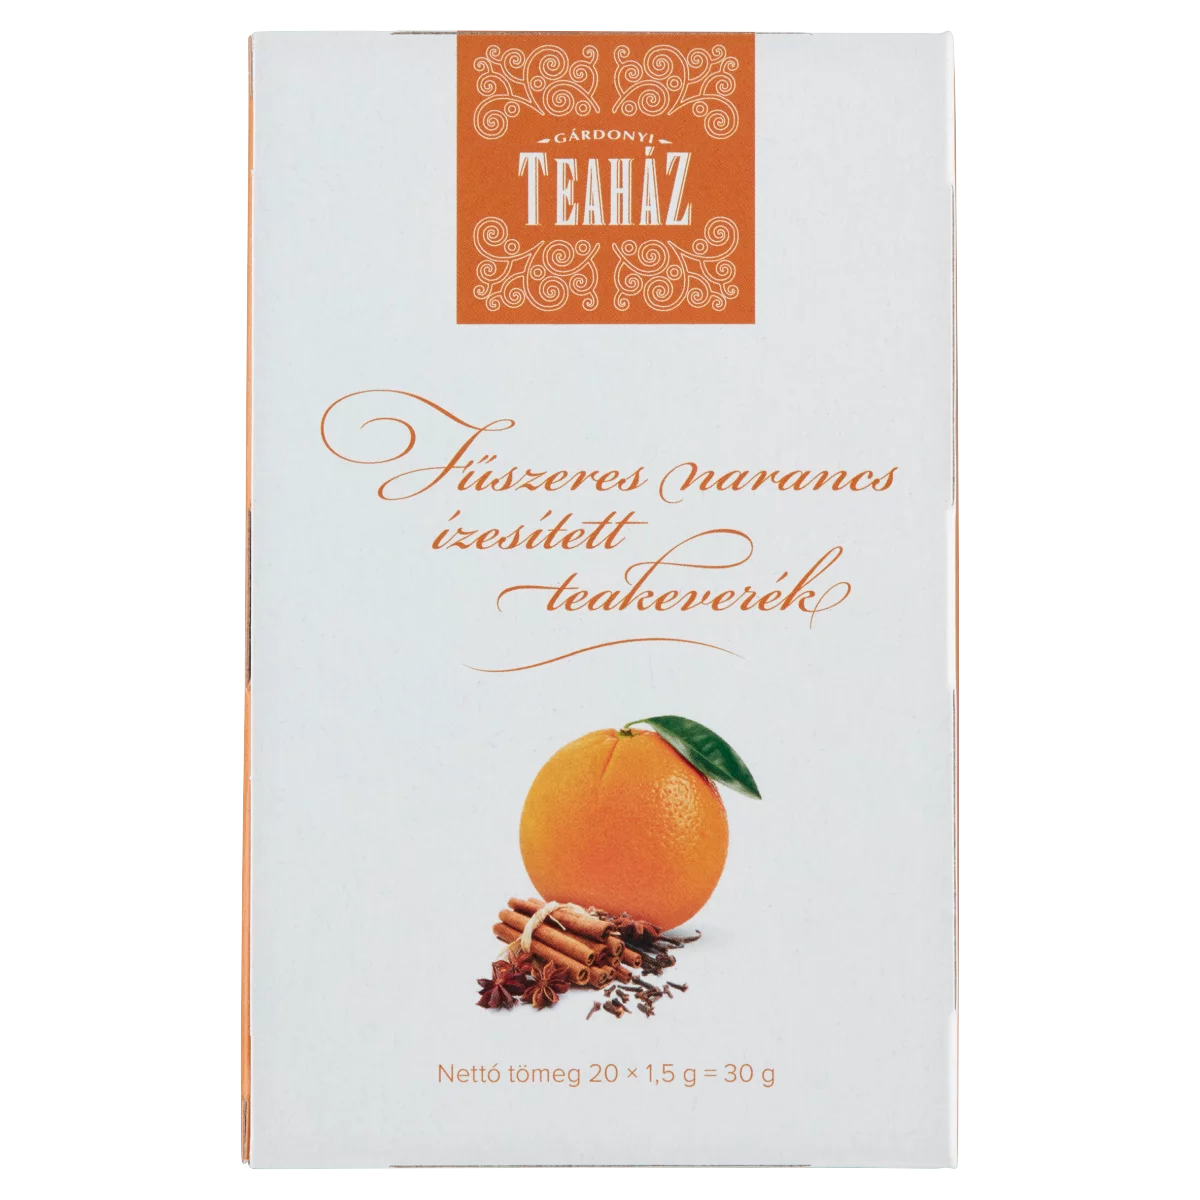 Gárdonyi Teaház fűszeres narancs ízesített teakeverék 20 filter 30 g